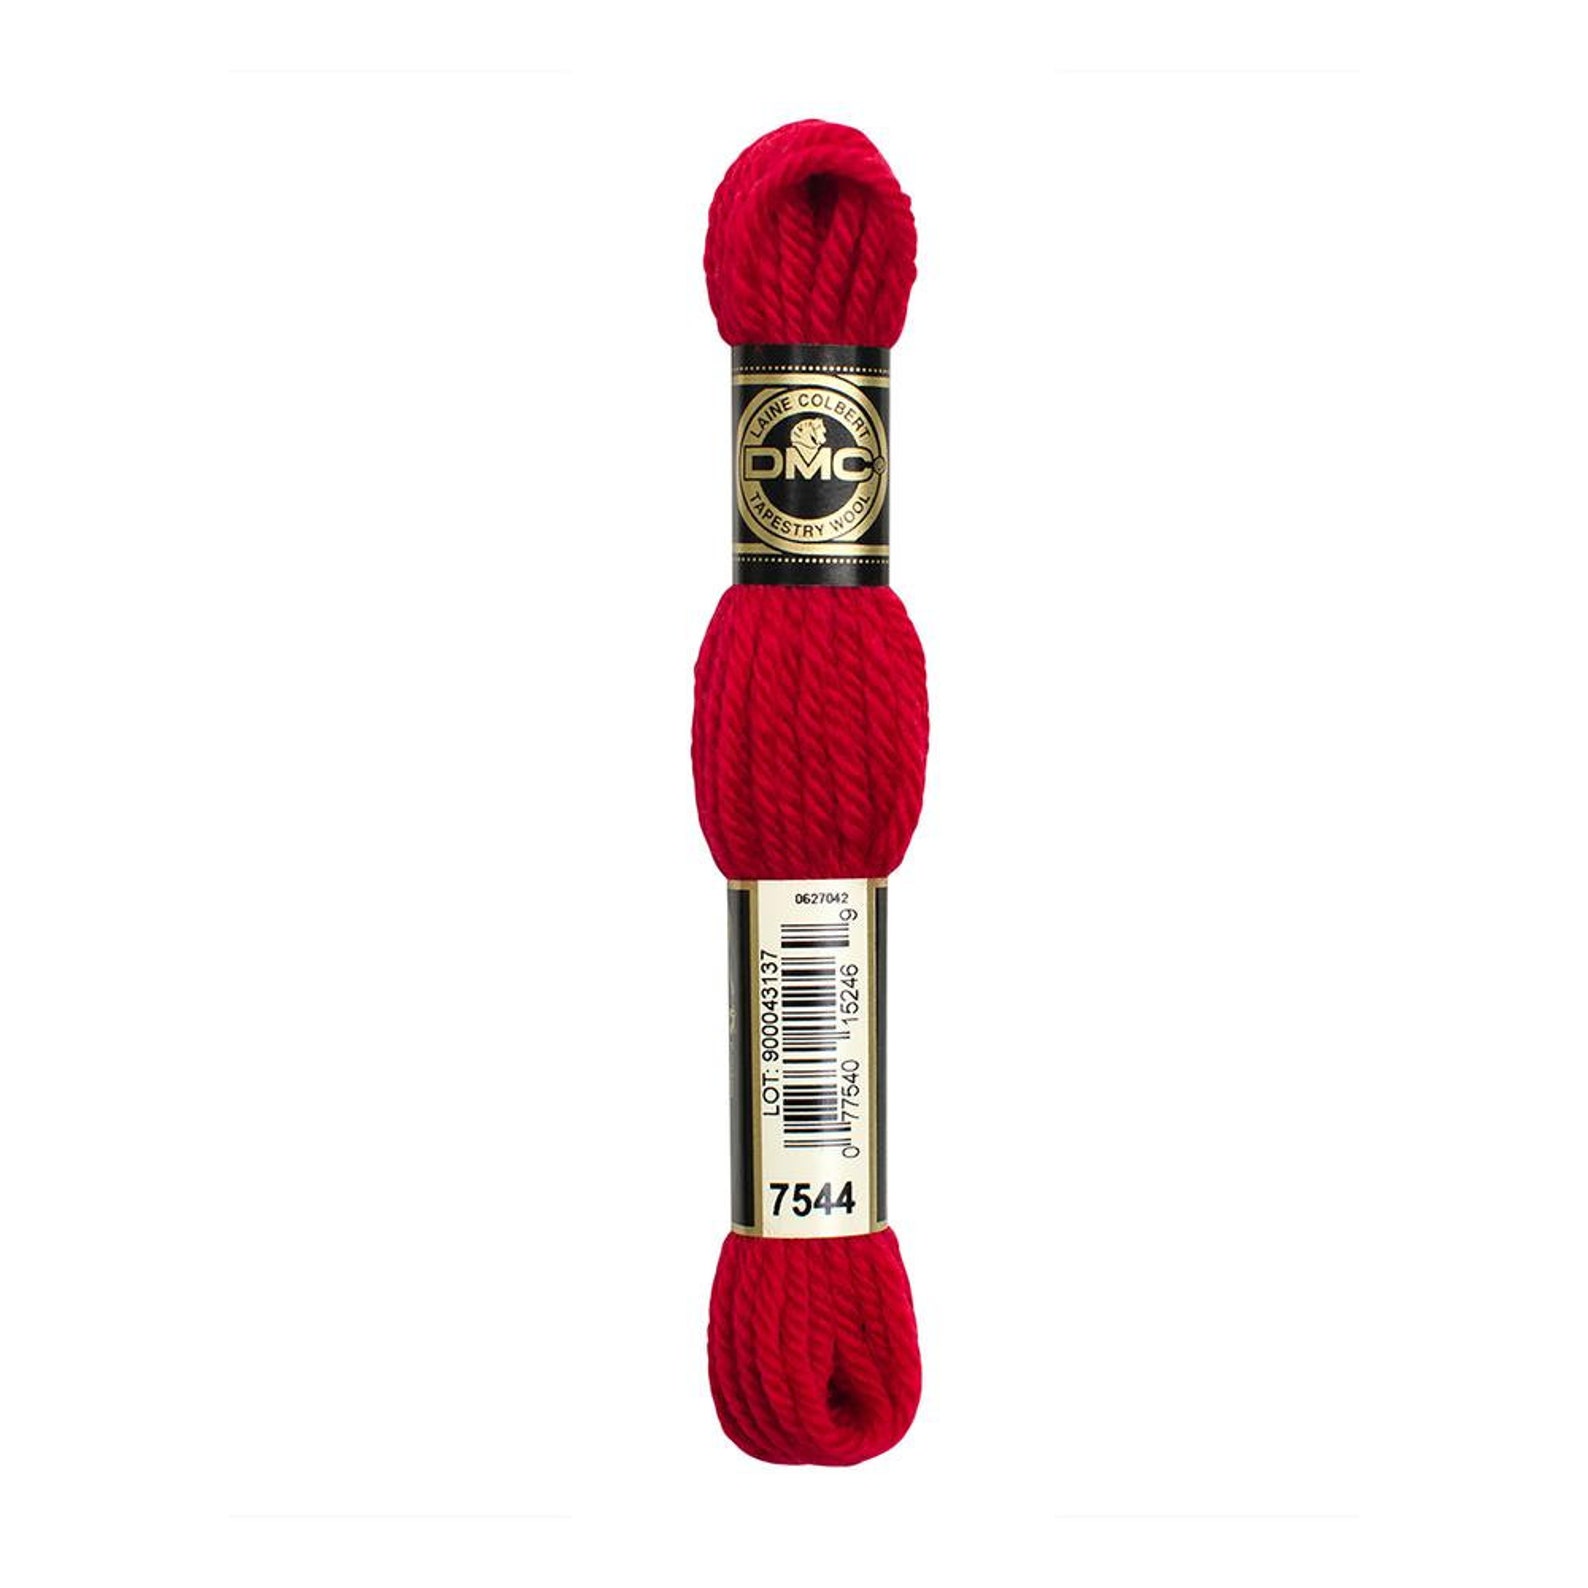 Tapestry Wool // Red 7544 // DMC Wool Yarn // Red Wool Yarn | Etsy